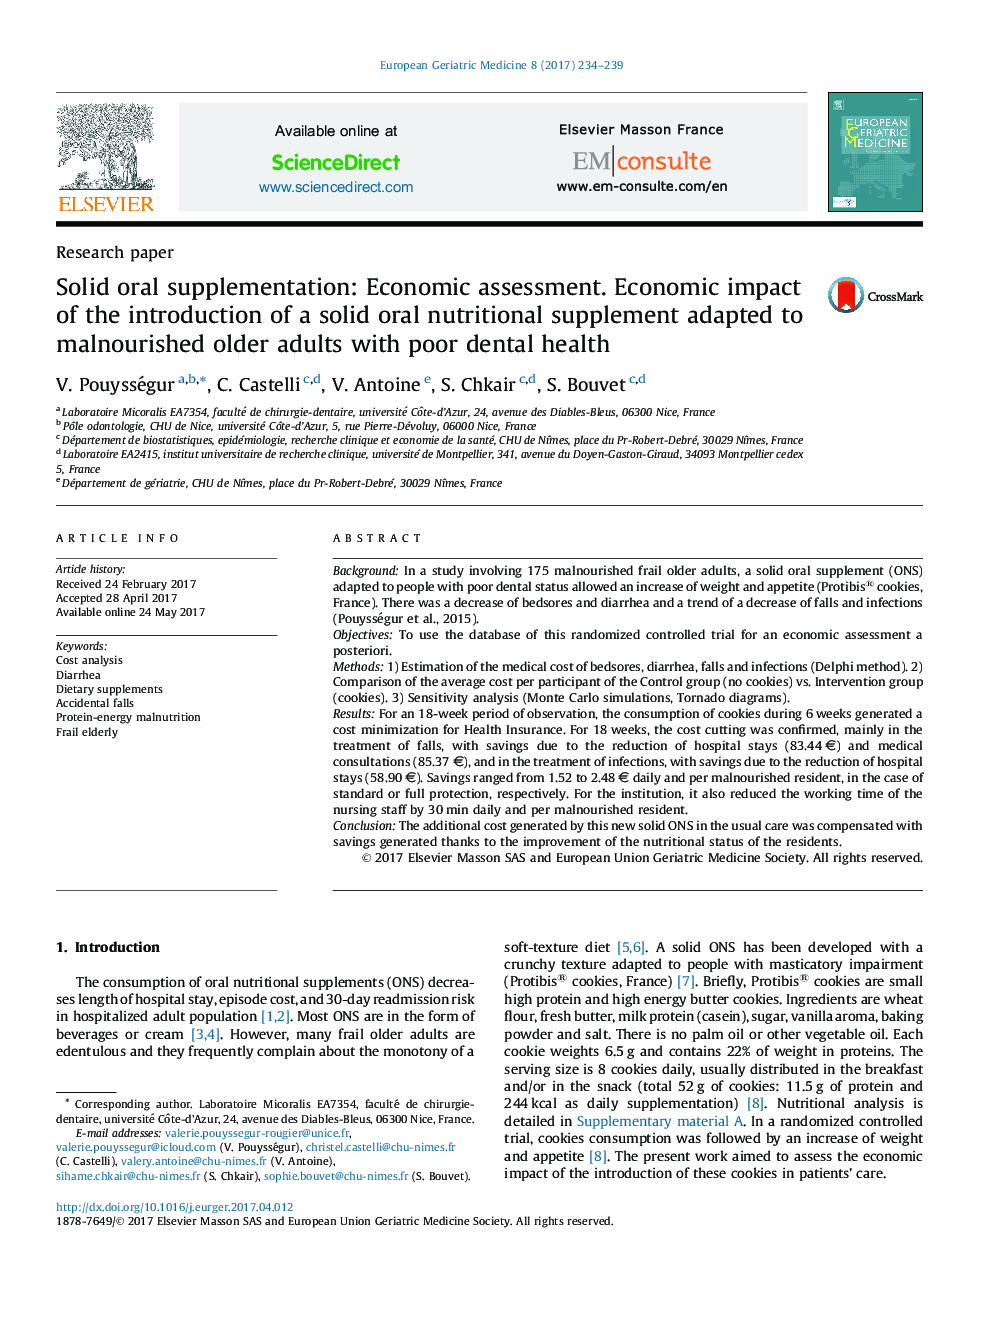 مکمل جامد دهان: ارزیابی اقتصادی. تأثیر اقتصادی معرفی یک مکمل تغذیه جامد خوراکی متناسب با افراد سالمند مبتلا به سوء تغذیه با سلامت دندانپزشکی فقیر 